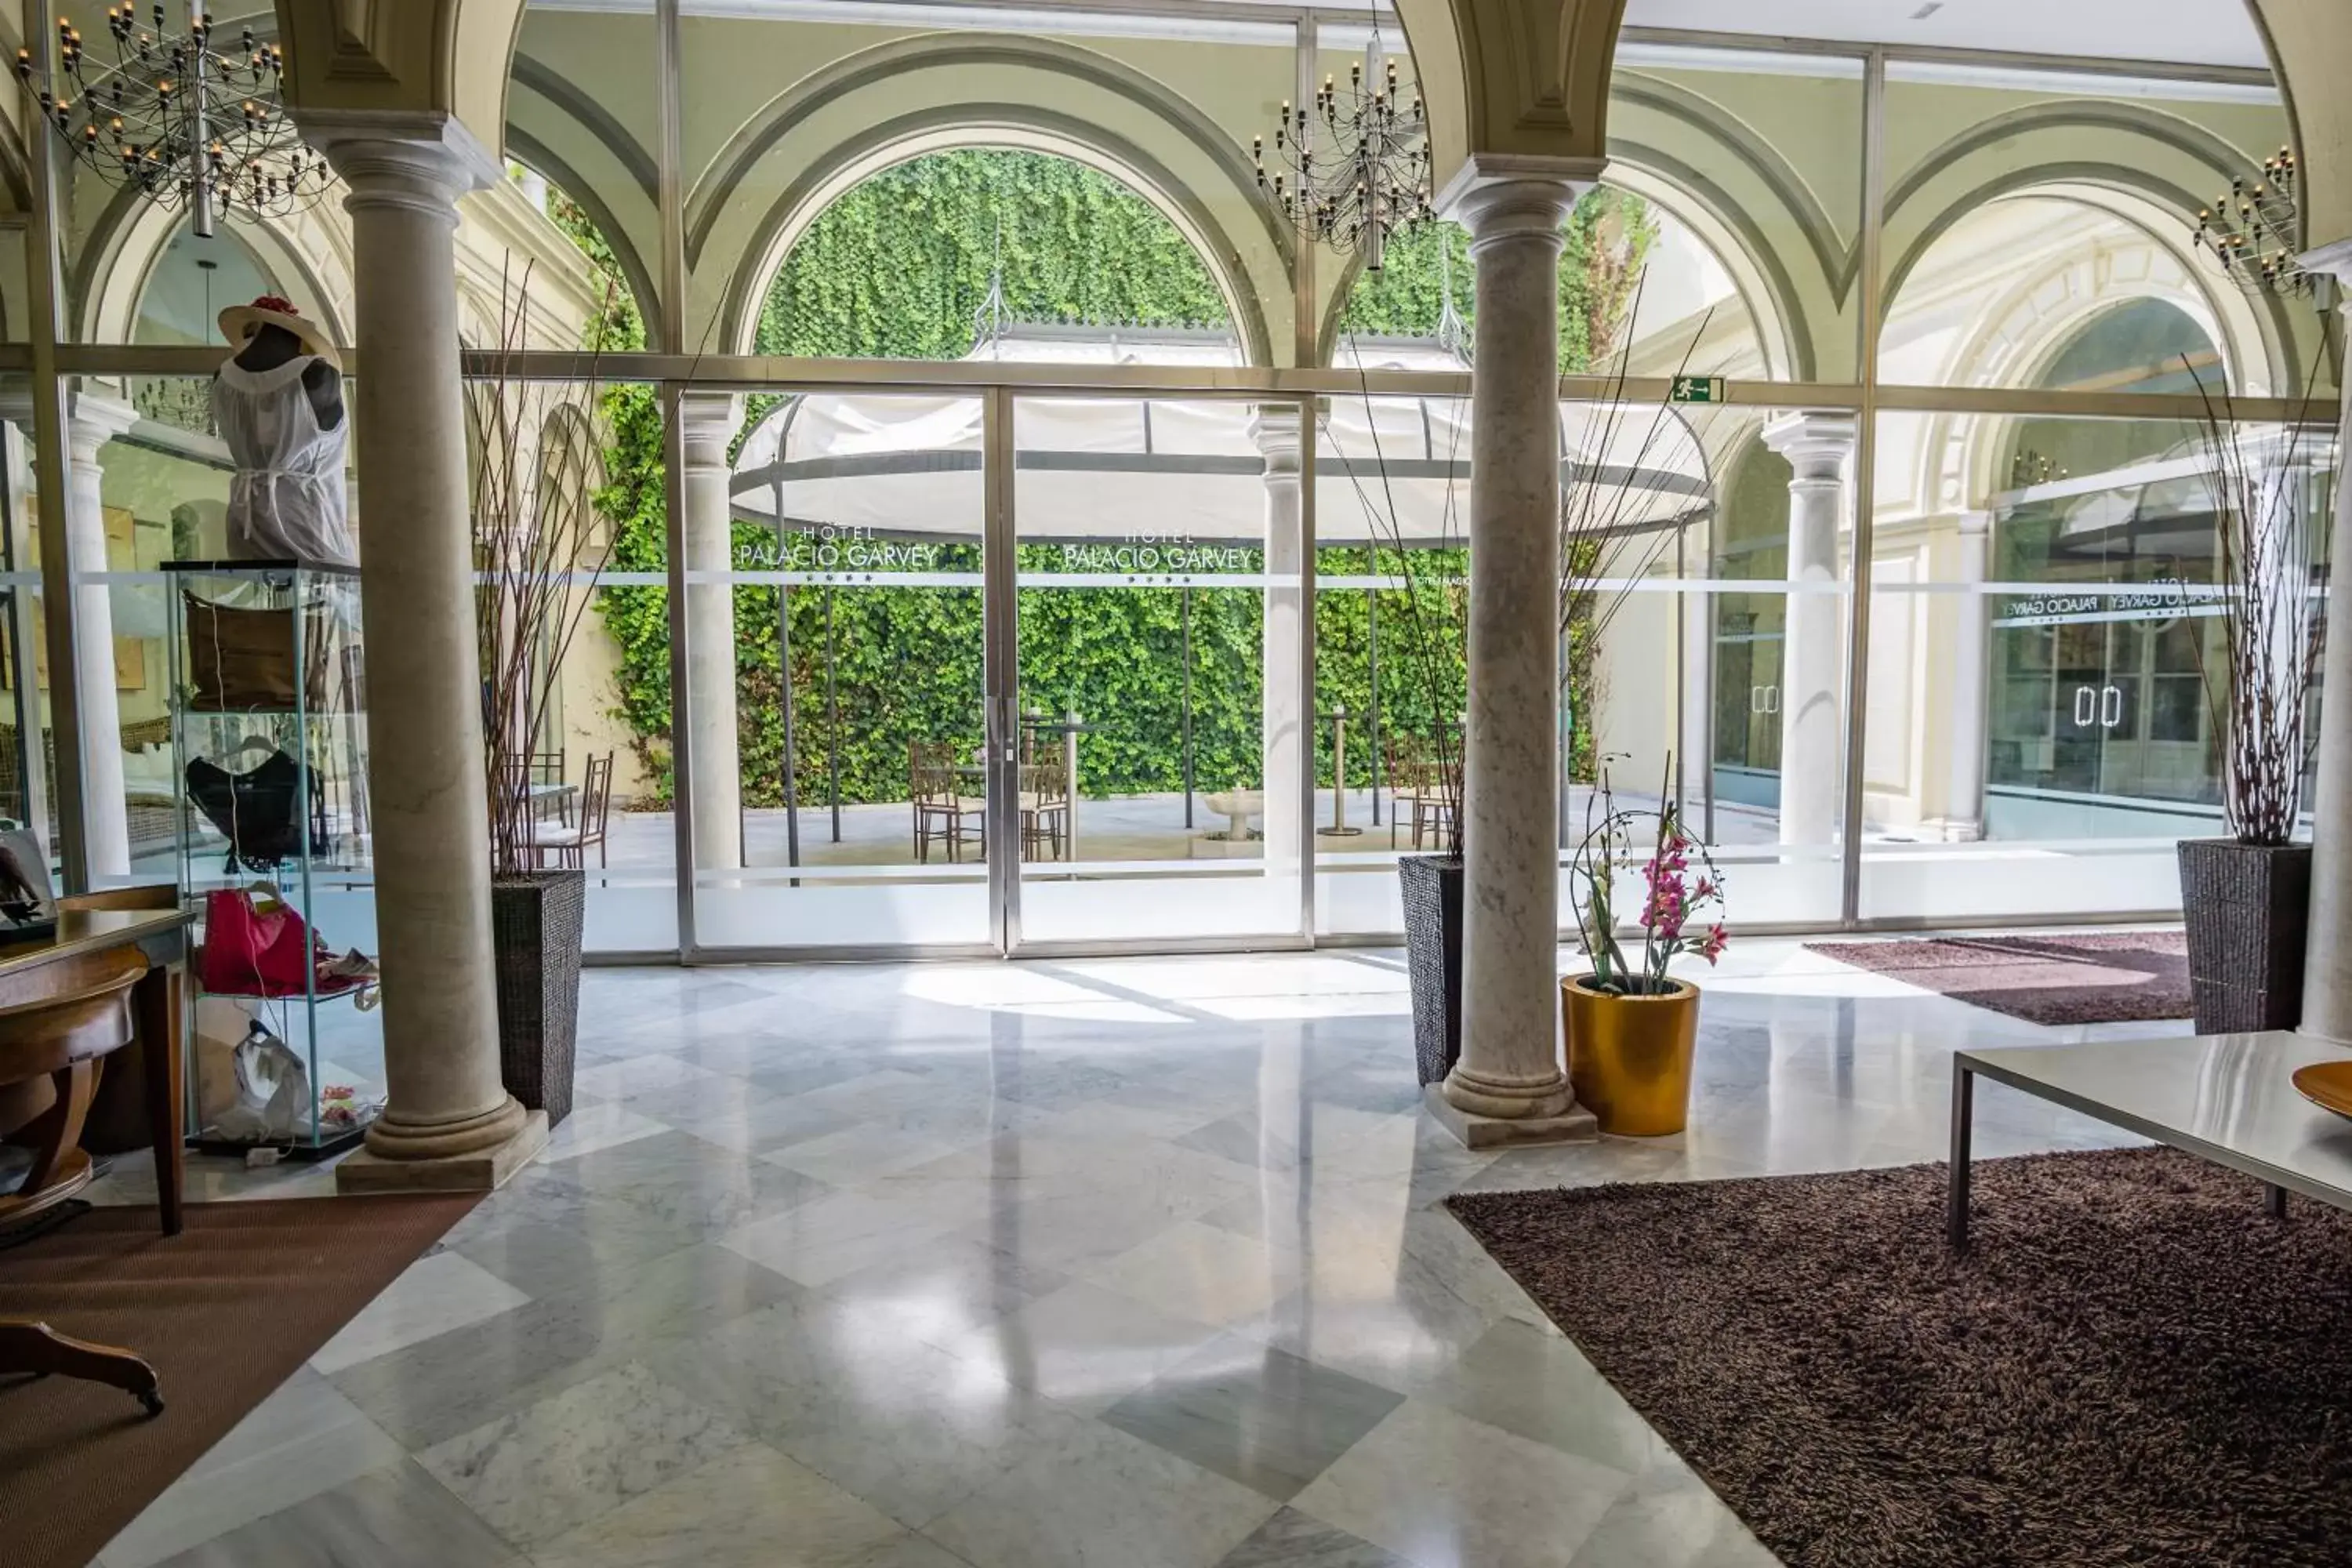 Lobby or reception in Hotel Palacio Garvey